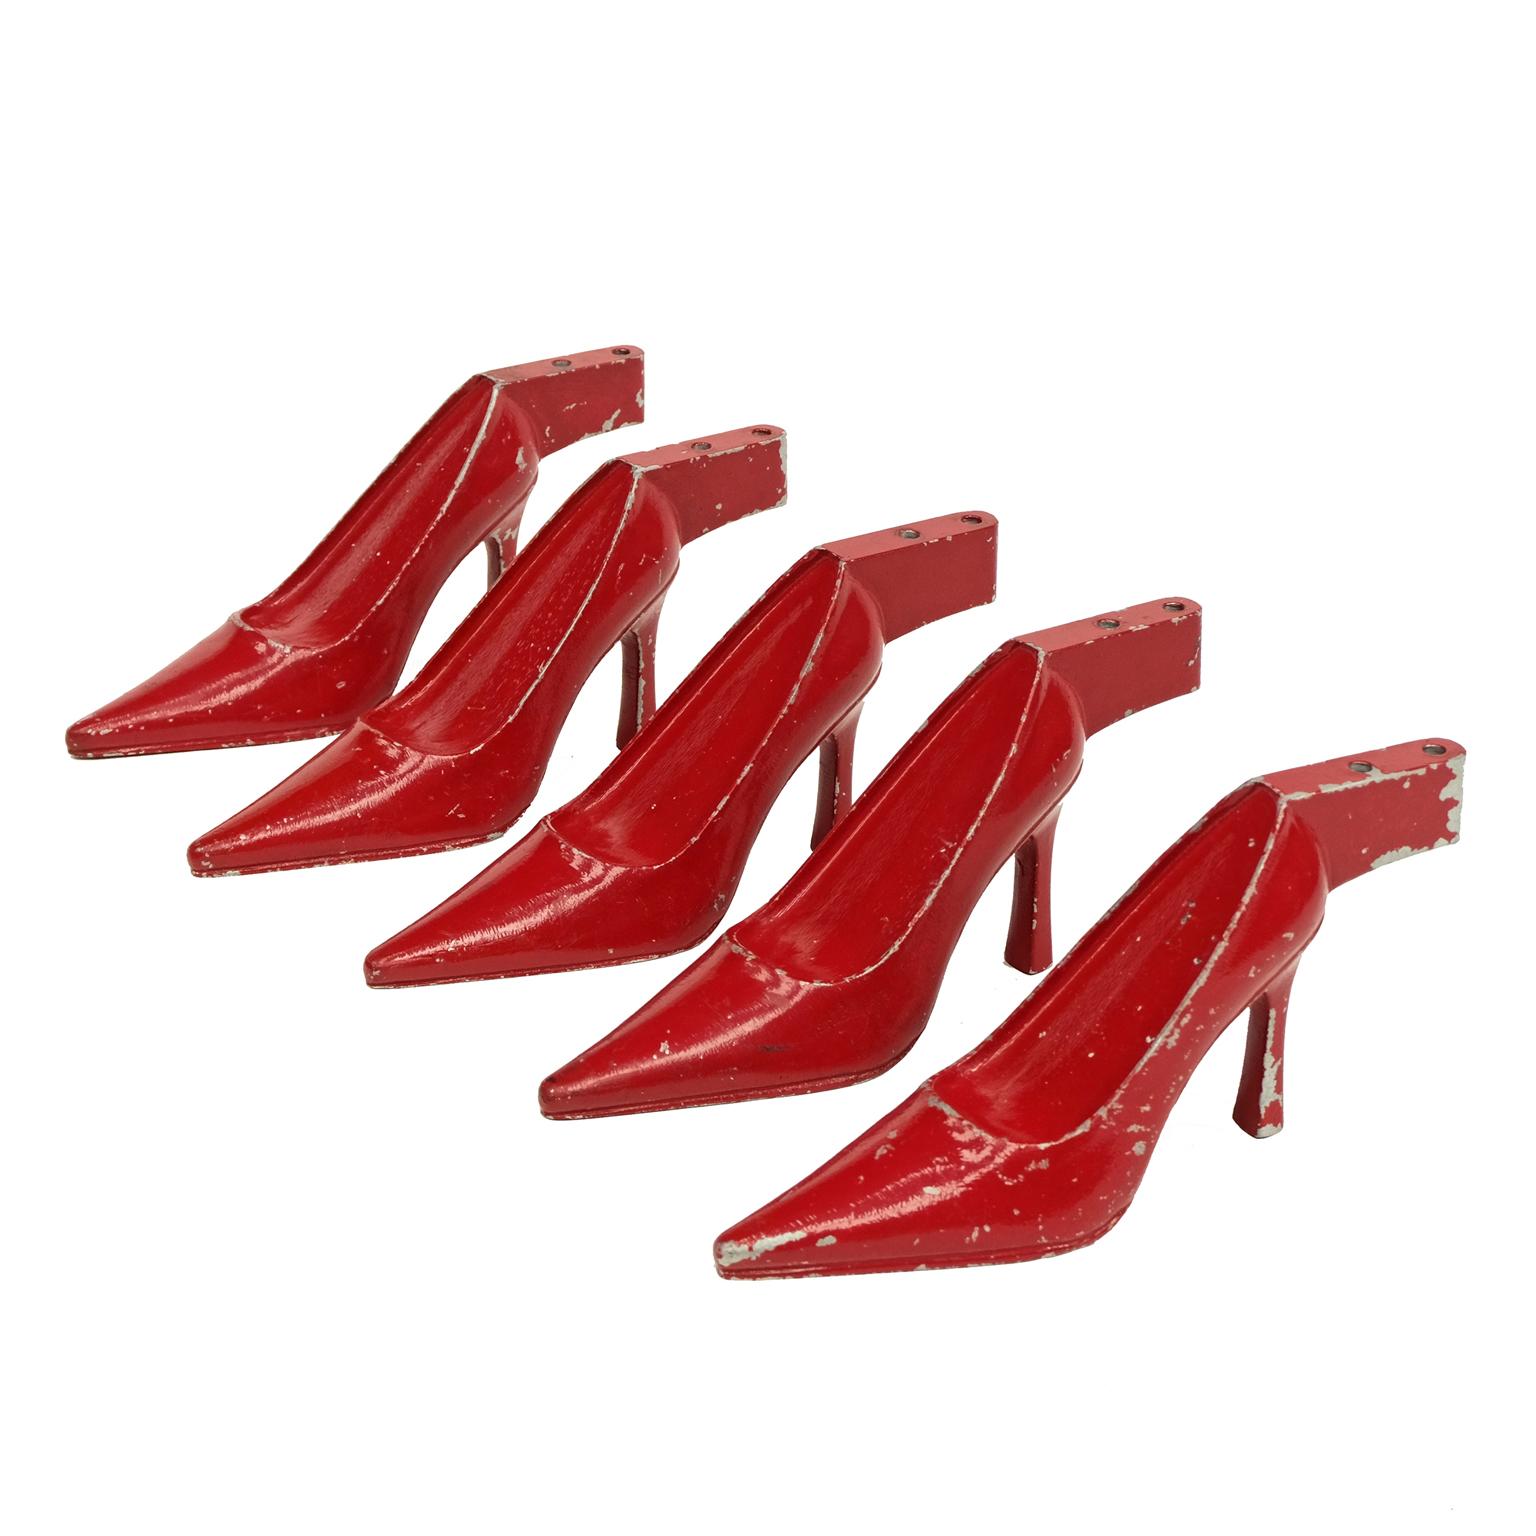 présentoirs de chaussures Stiletto des années 1950. Forme en acier peint en rouge, conçue et fabriquée au Royaume-Uni. Le prix est fixé par chaussure.

Les chaussures peuvent être affichées en groupe ou individuellement. 

Signes d'âge d'origine sur